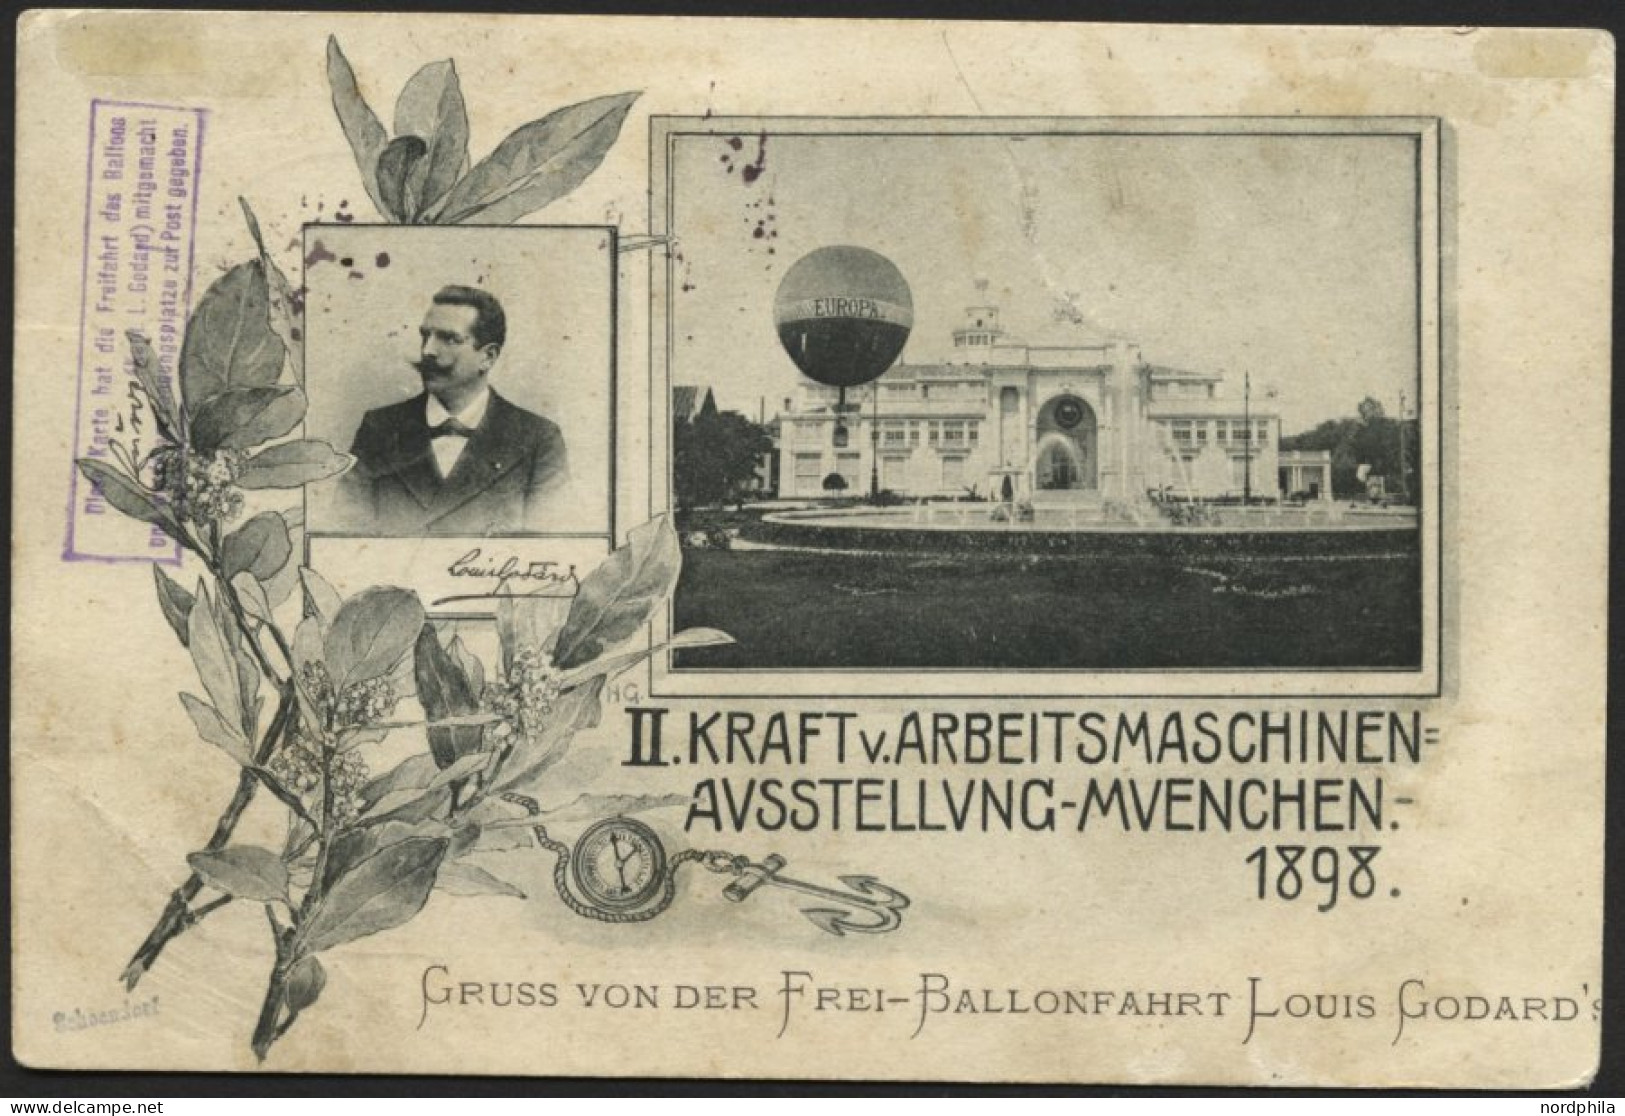 BALLON-FAHRTEN 1897-1916 15.8.1898, Freifahrt Des Ballons EUROPA Mit Kapitän Louis Godard, Aufstieg Am 1. Ausstellungsta - Fesselballons